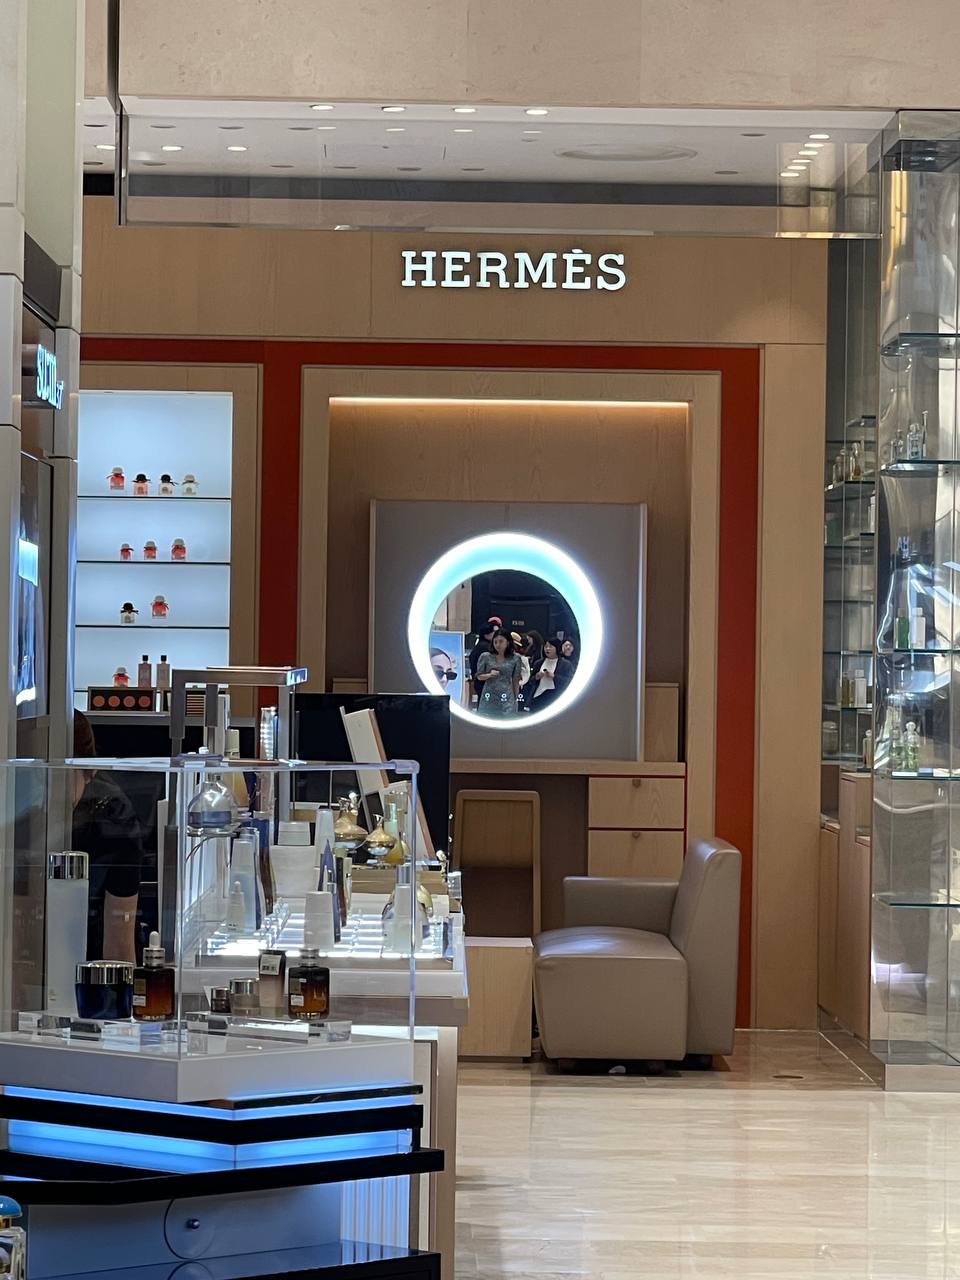 Hermes&lt;br&gt;
&lt;br&gt;
Это элитный бренд, за которым охотятся девушки со всего мира. Я сама охочусь и жду когда появится наличие на определенную модель. Хочу купить, а ее нет - представляете. И цена здесь не имеет значения. Такова политика Бренда🔥&lt;br&gt;
&lt;br&gt;
Также обратите внимание на косметику: пудры и бронзаторы и бальзамы для губ. Поселедним сама пользуюсь - нравится. Такой дорогой оттенок, с помадой не сравнится. Аналог еще не нашла. &lt;br&gt;
&lt;br&gt;
Также как и Chanel - холю и лелею, заканчиваться не собирается😅купила в прошлом году.&lt;br&gt;
&lt;br&gt;
Бальзамы для губ - 9900 р (4 оттенка)&lt;br&gt;
Пудра - 12.800 р, разные оттенки, &lt;br&gt;
Бронзатор/румяна - 10.500 р, разные оттенки&lt;br&gt;
&lt;br&gt;
У них очень красивая и достойная подарочная упаковка🎁&lt;br&gt;
&lt;br&gt;
Все цены с учетом доставки до Москвы, 16го мая будет в Мск. Без длительных ожиданий, везу сама лично🔥. В Мск - самовывоз или Яндекс доставка, почта, сдэк, боксберри (за счет покупателя). &lt;br&gt;
&lt;br&gt;
Если что-то другое интересует, вы можете запросить наличие и стоимость в личных сообщениях.&lt;br&gt;
&lt;br&gt;
Кто хочет приобрести - пишите мне в личные сообщения @dayana_stylist❤️&lt;br&gt;
&lt;br&gt;
 📍Выкупаю 2 дня - 10-11 мая title=